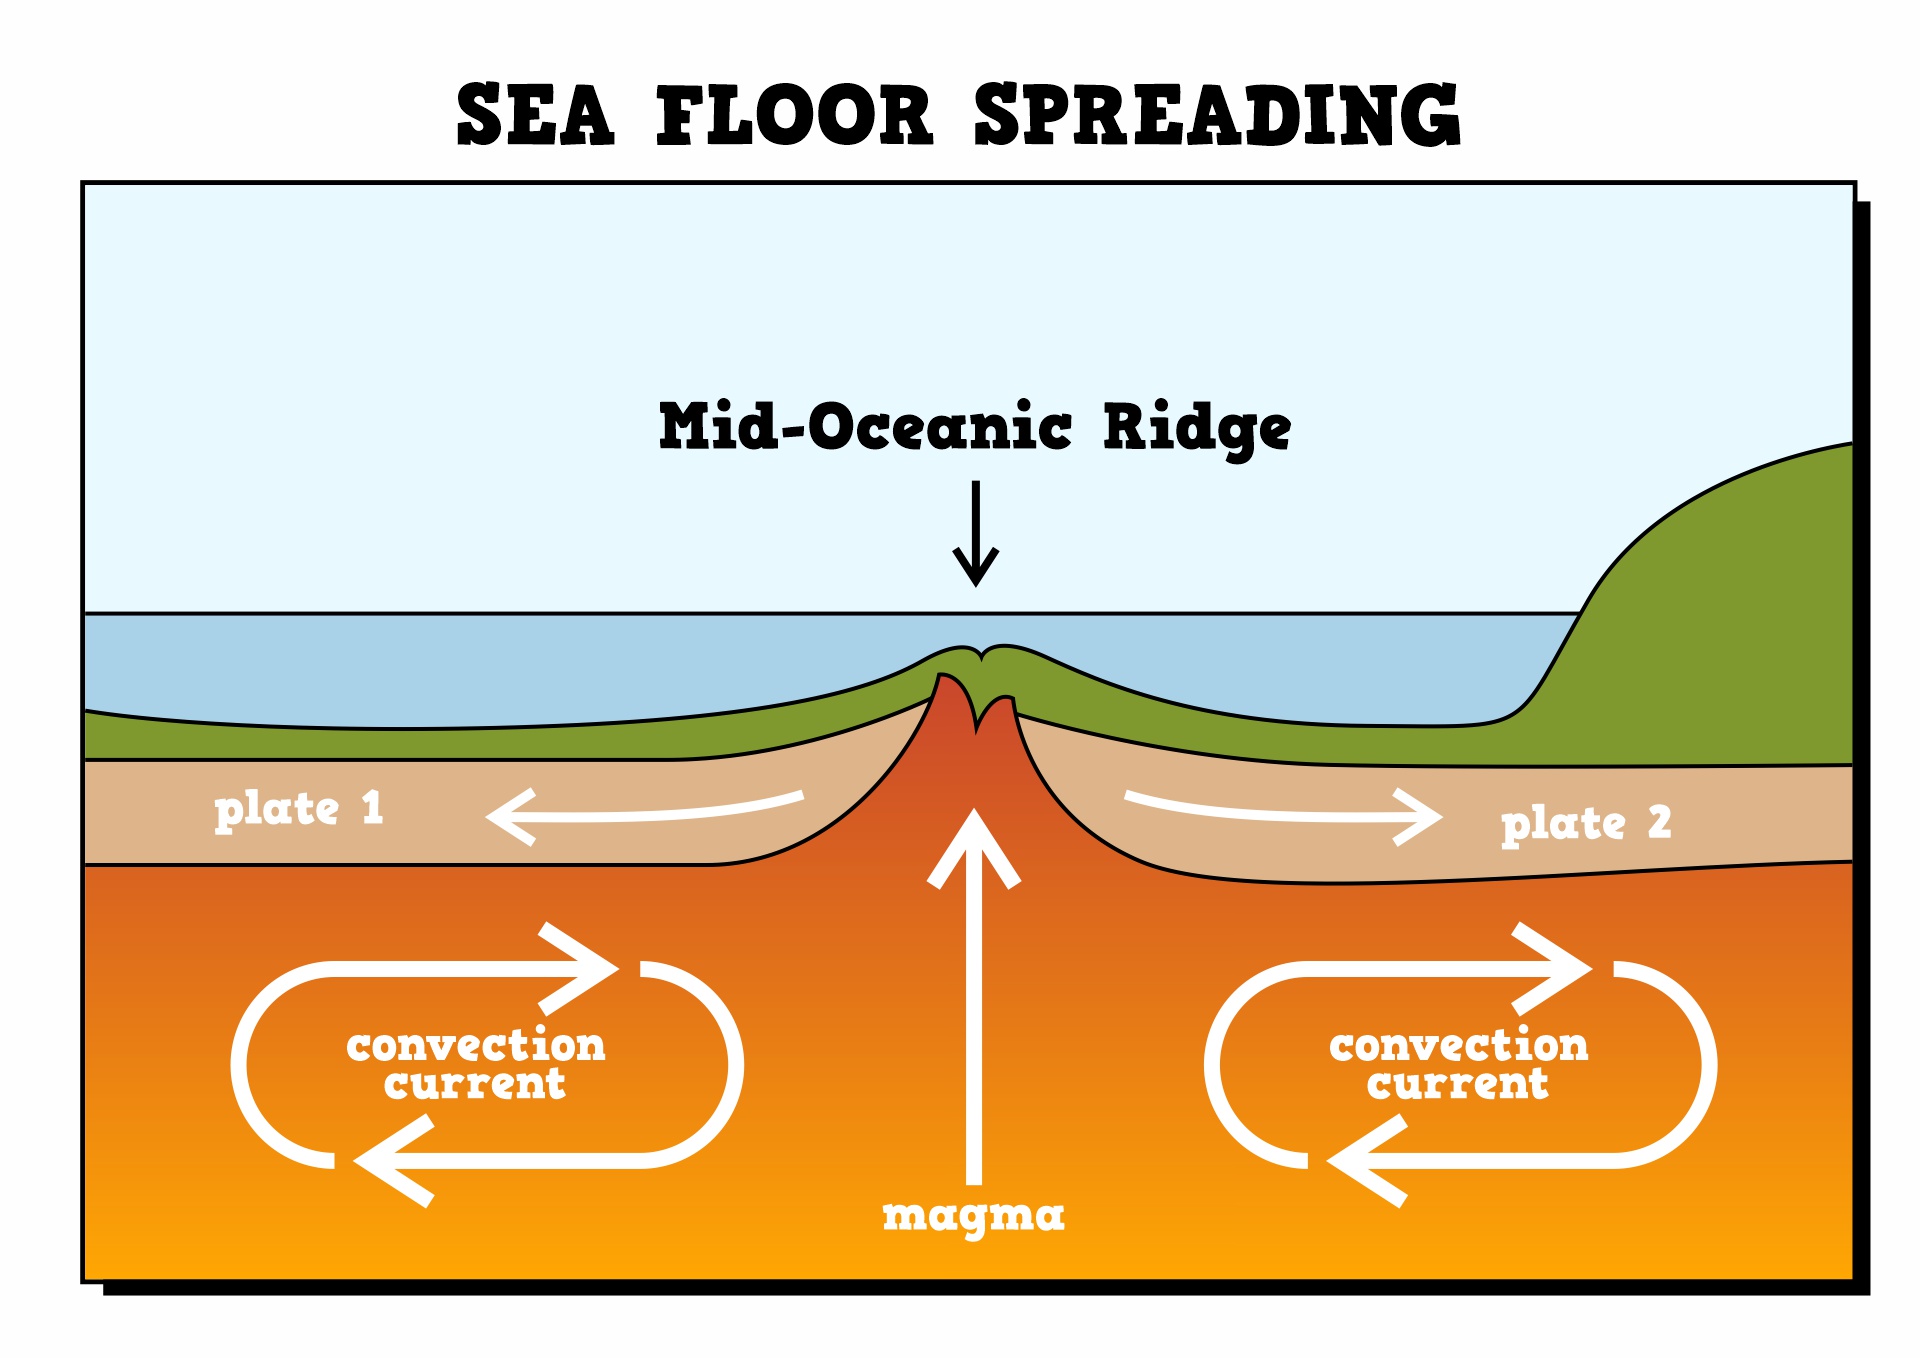 Sea Floor Spreading Diagram Image